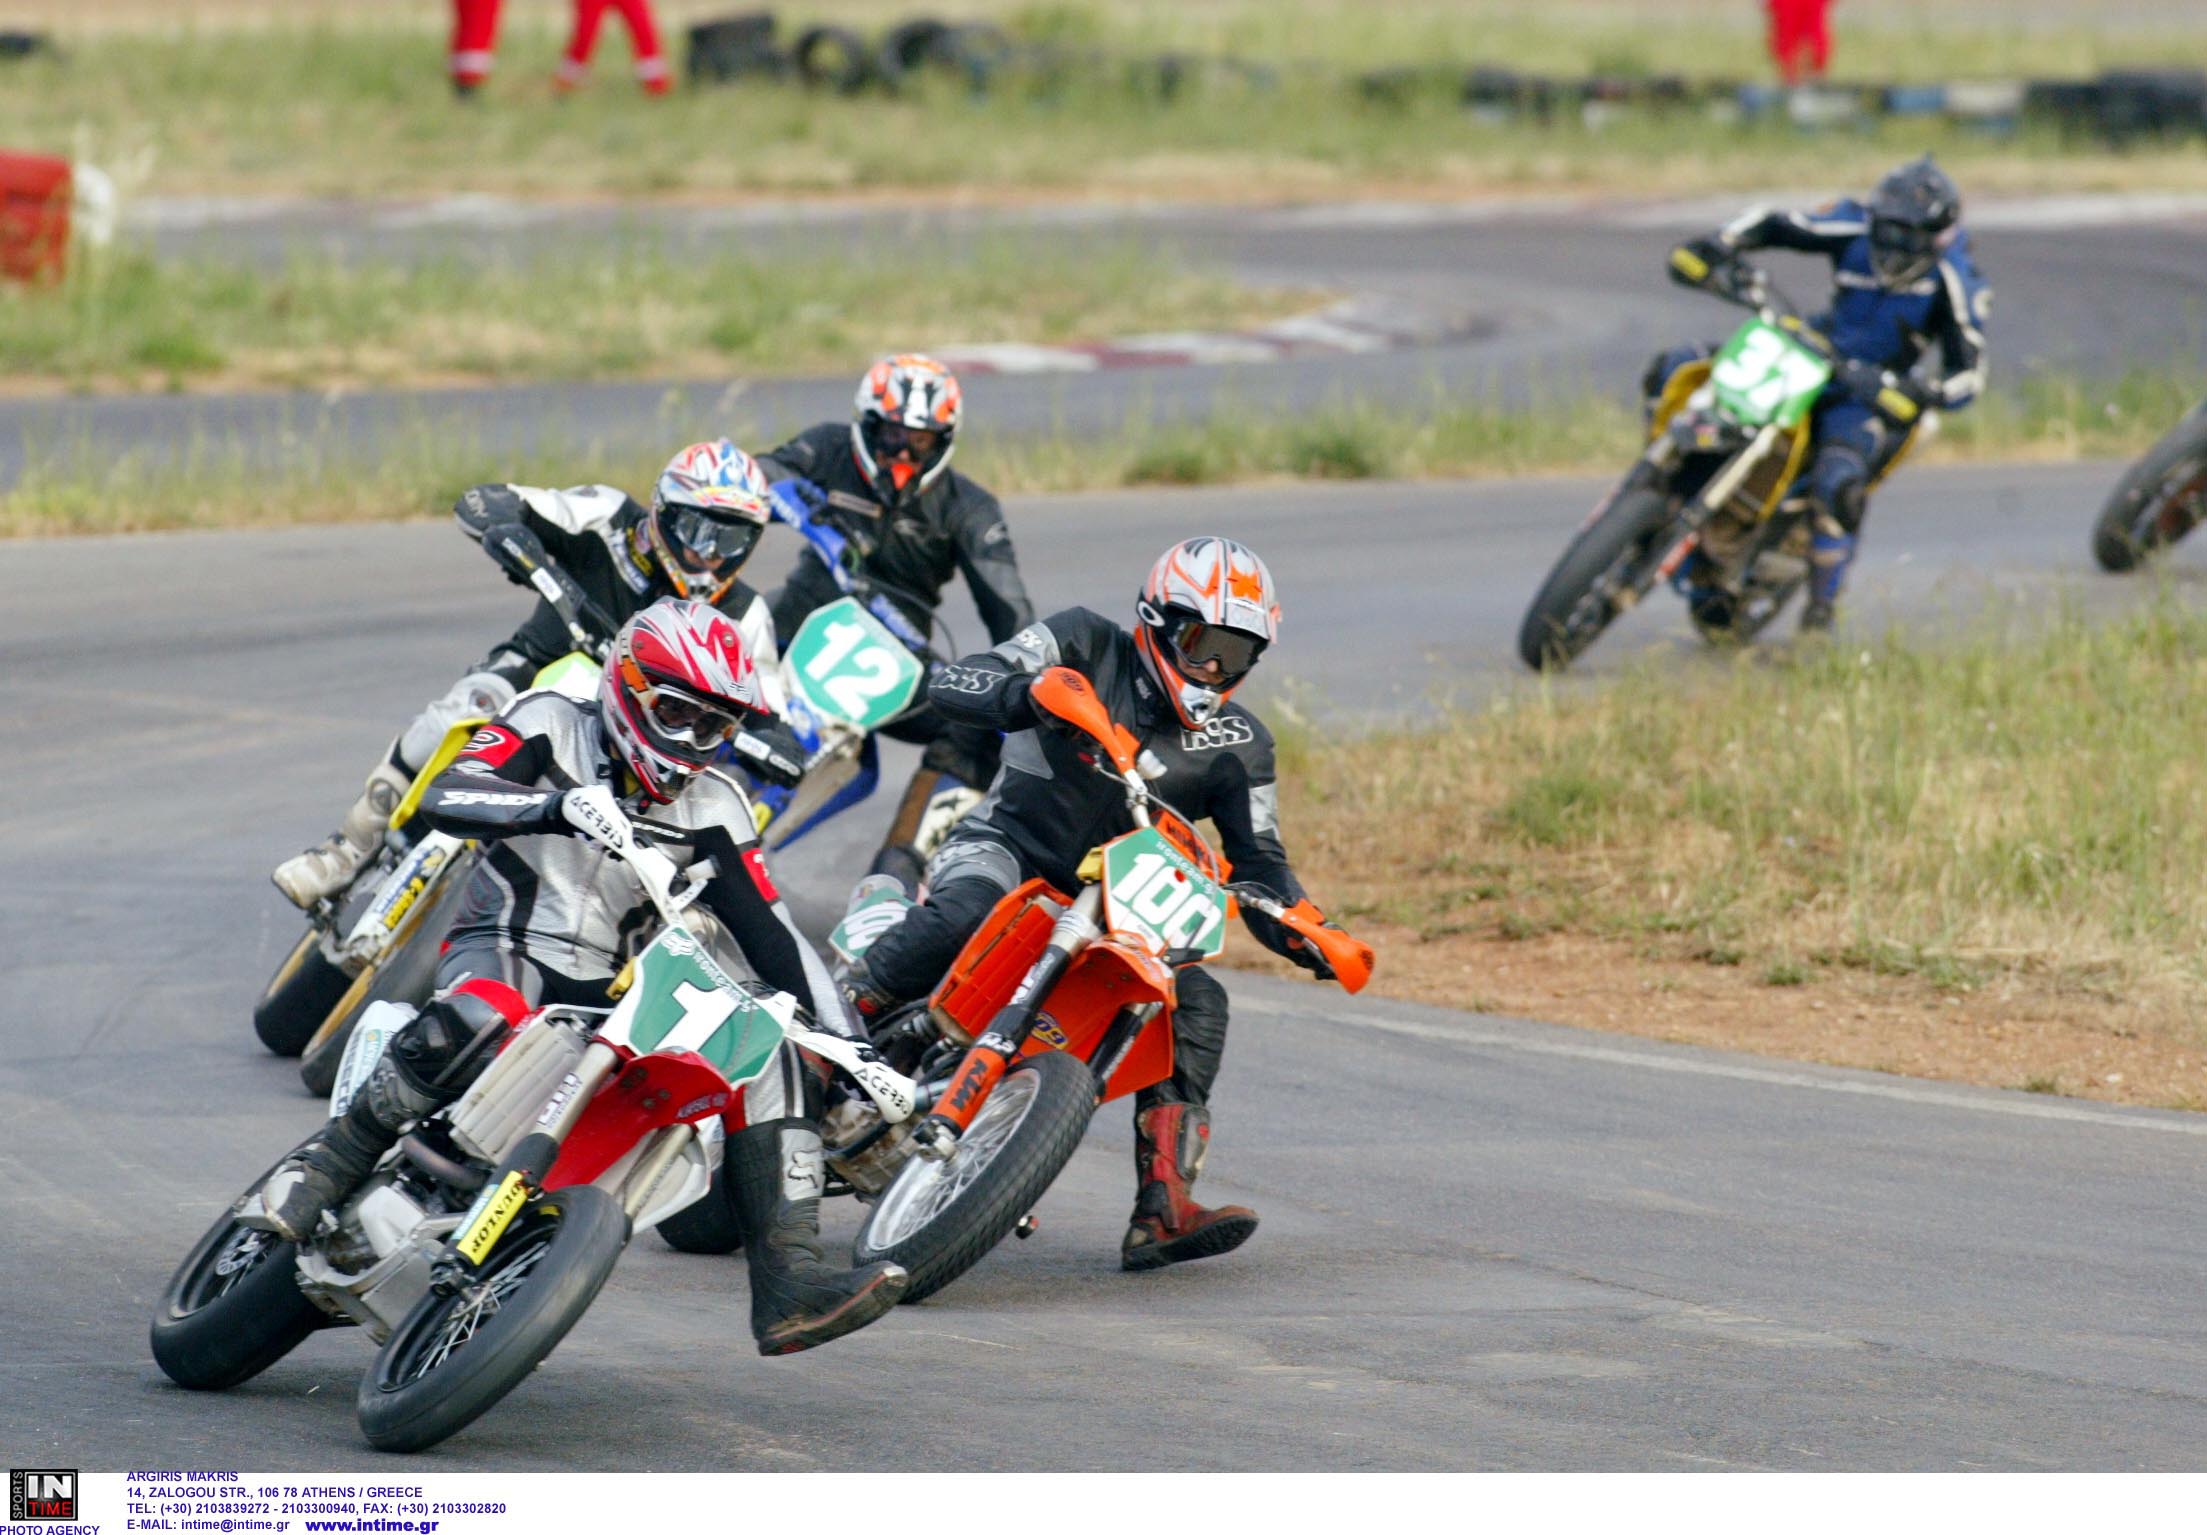 Γιαννιτσά: Δύο συλλήψεις μετά το ατύχημα σε πίστα Motocross με δύο θεατές σοβαρά τραυματίες